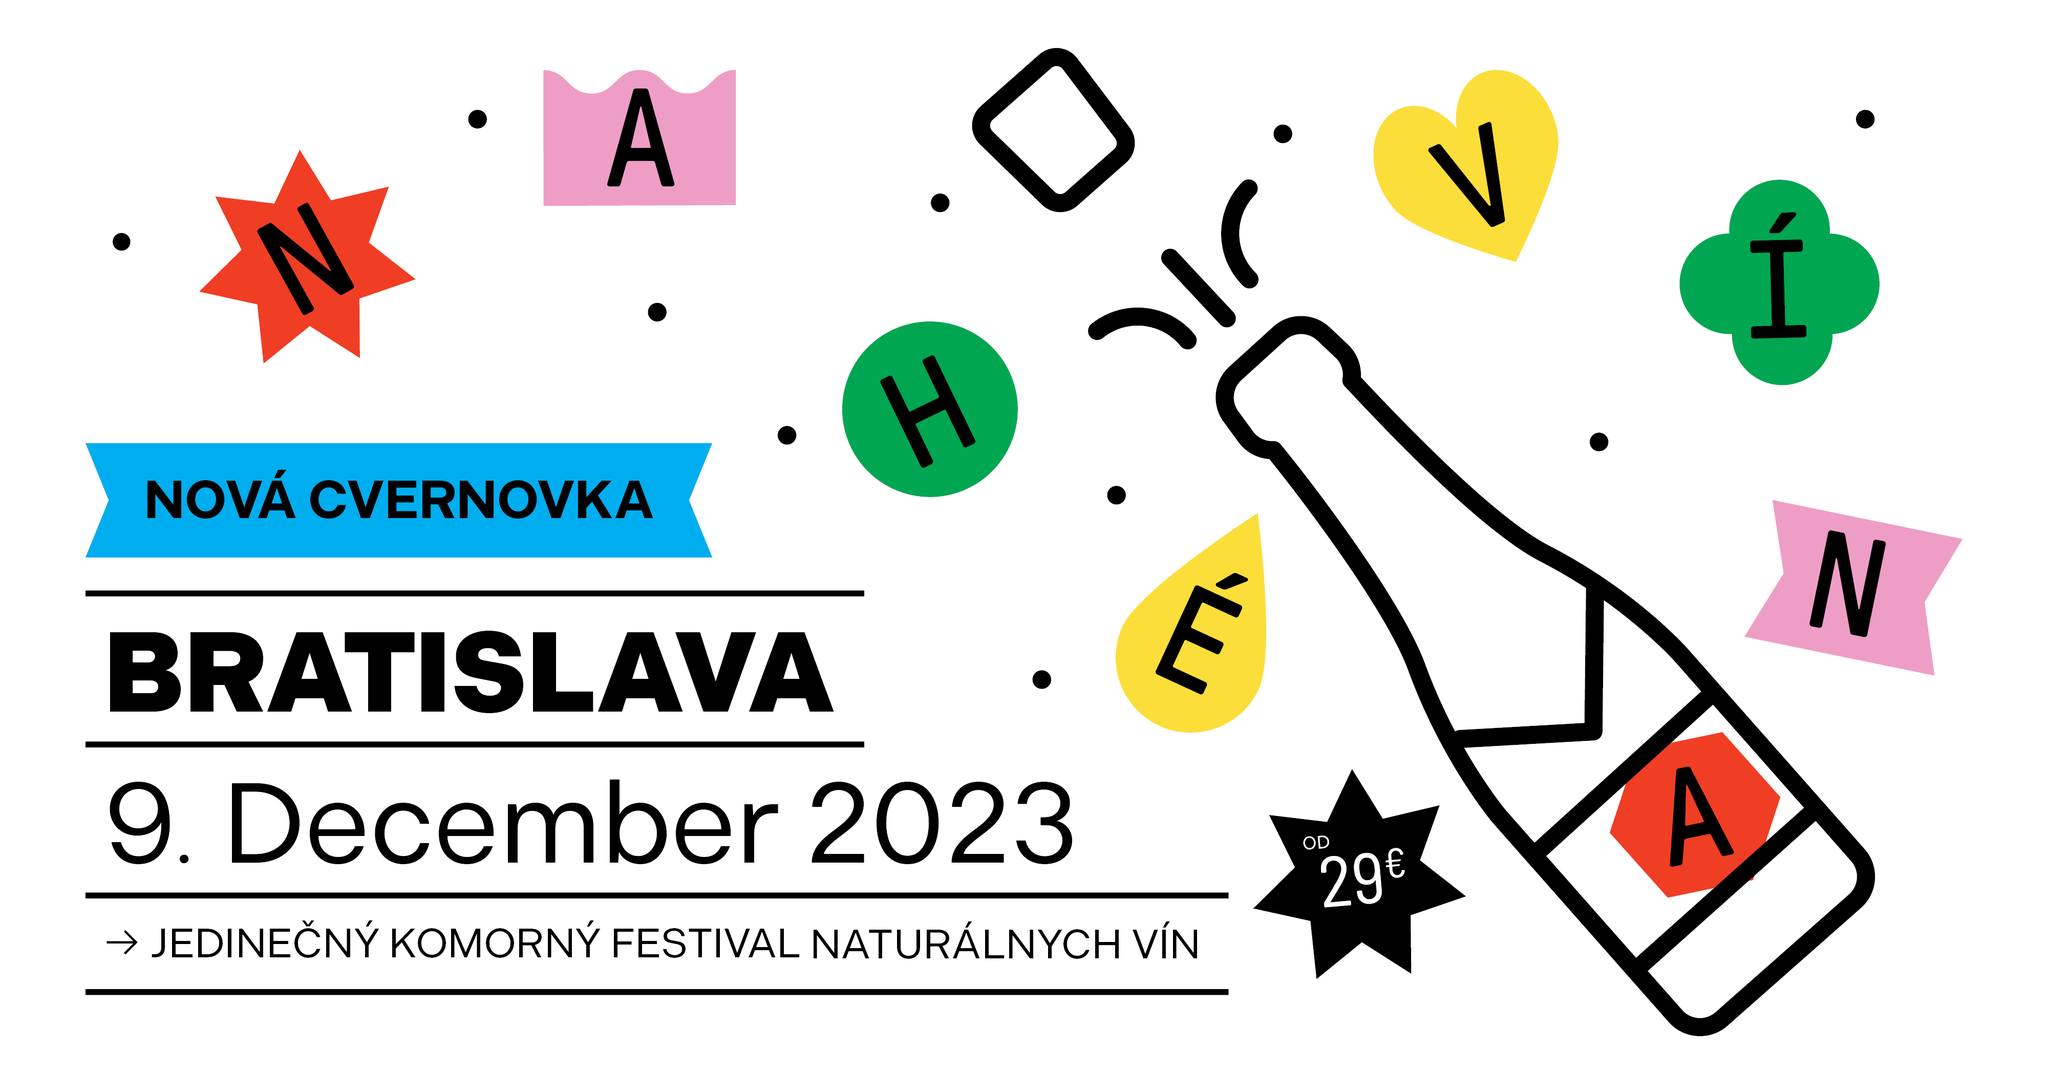 Festival Nah vna 2023 Bratislava - zimn edcia